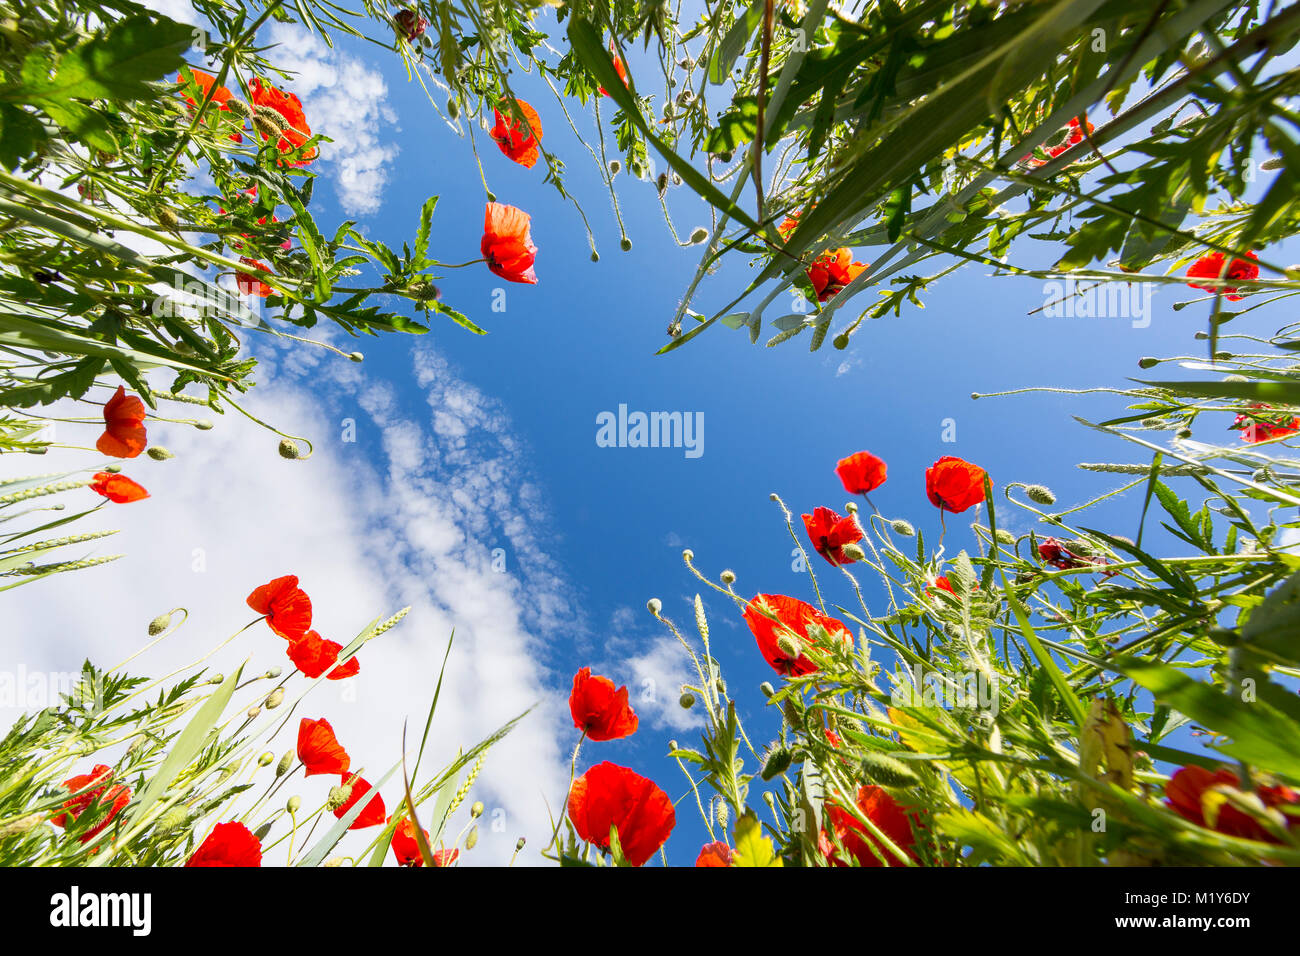 Ángulo de visión baja de un campo con flores de adormidera (Papaver) y trigo (Triticum aestivum), Sajonia, Alemania Foto de stock